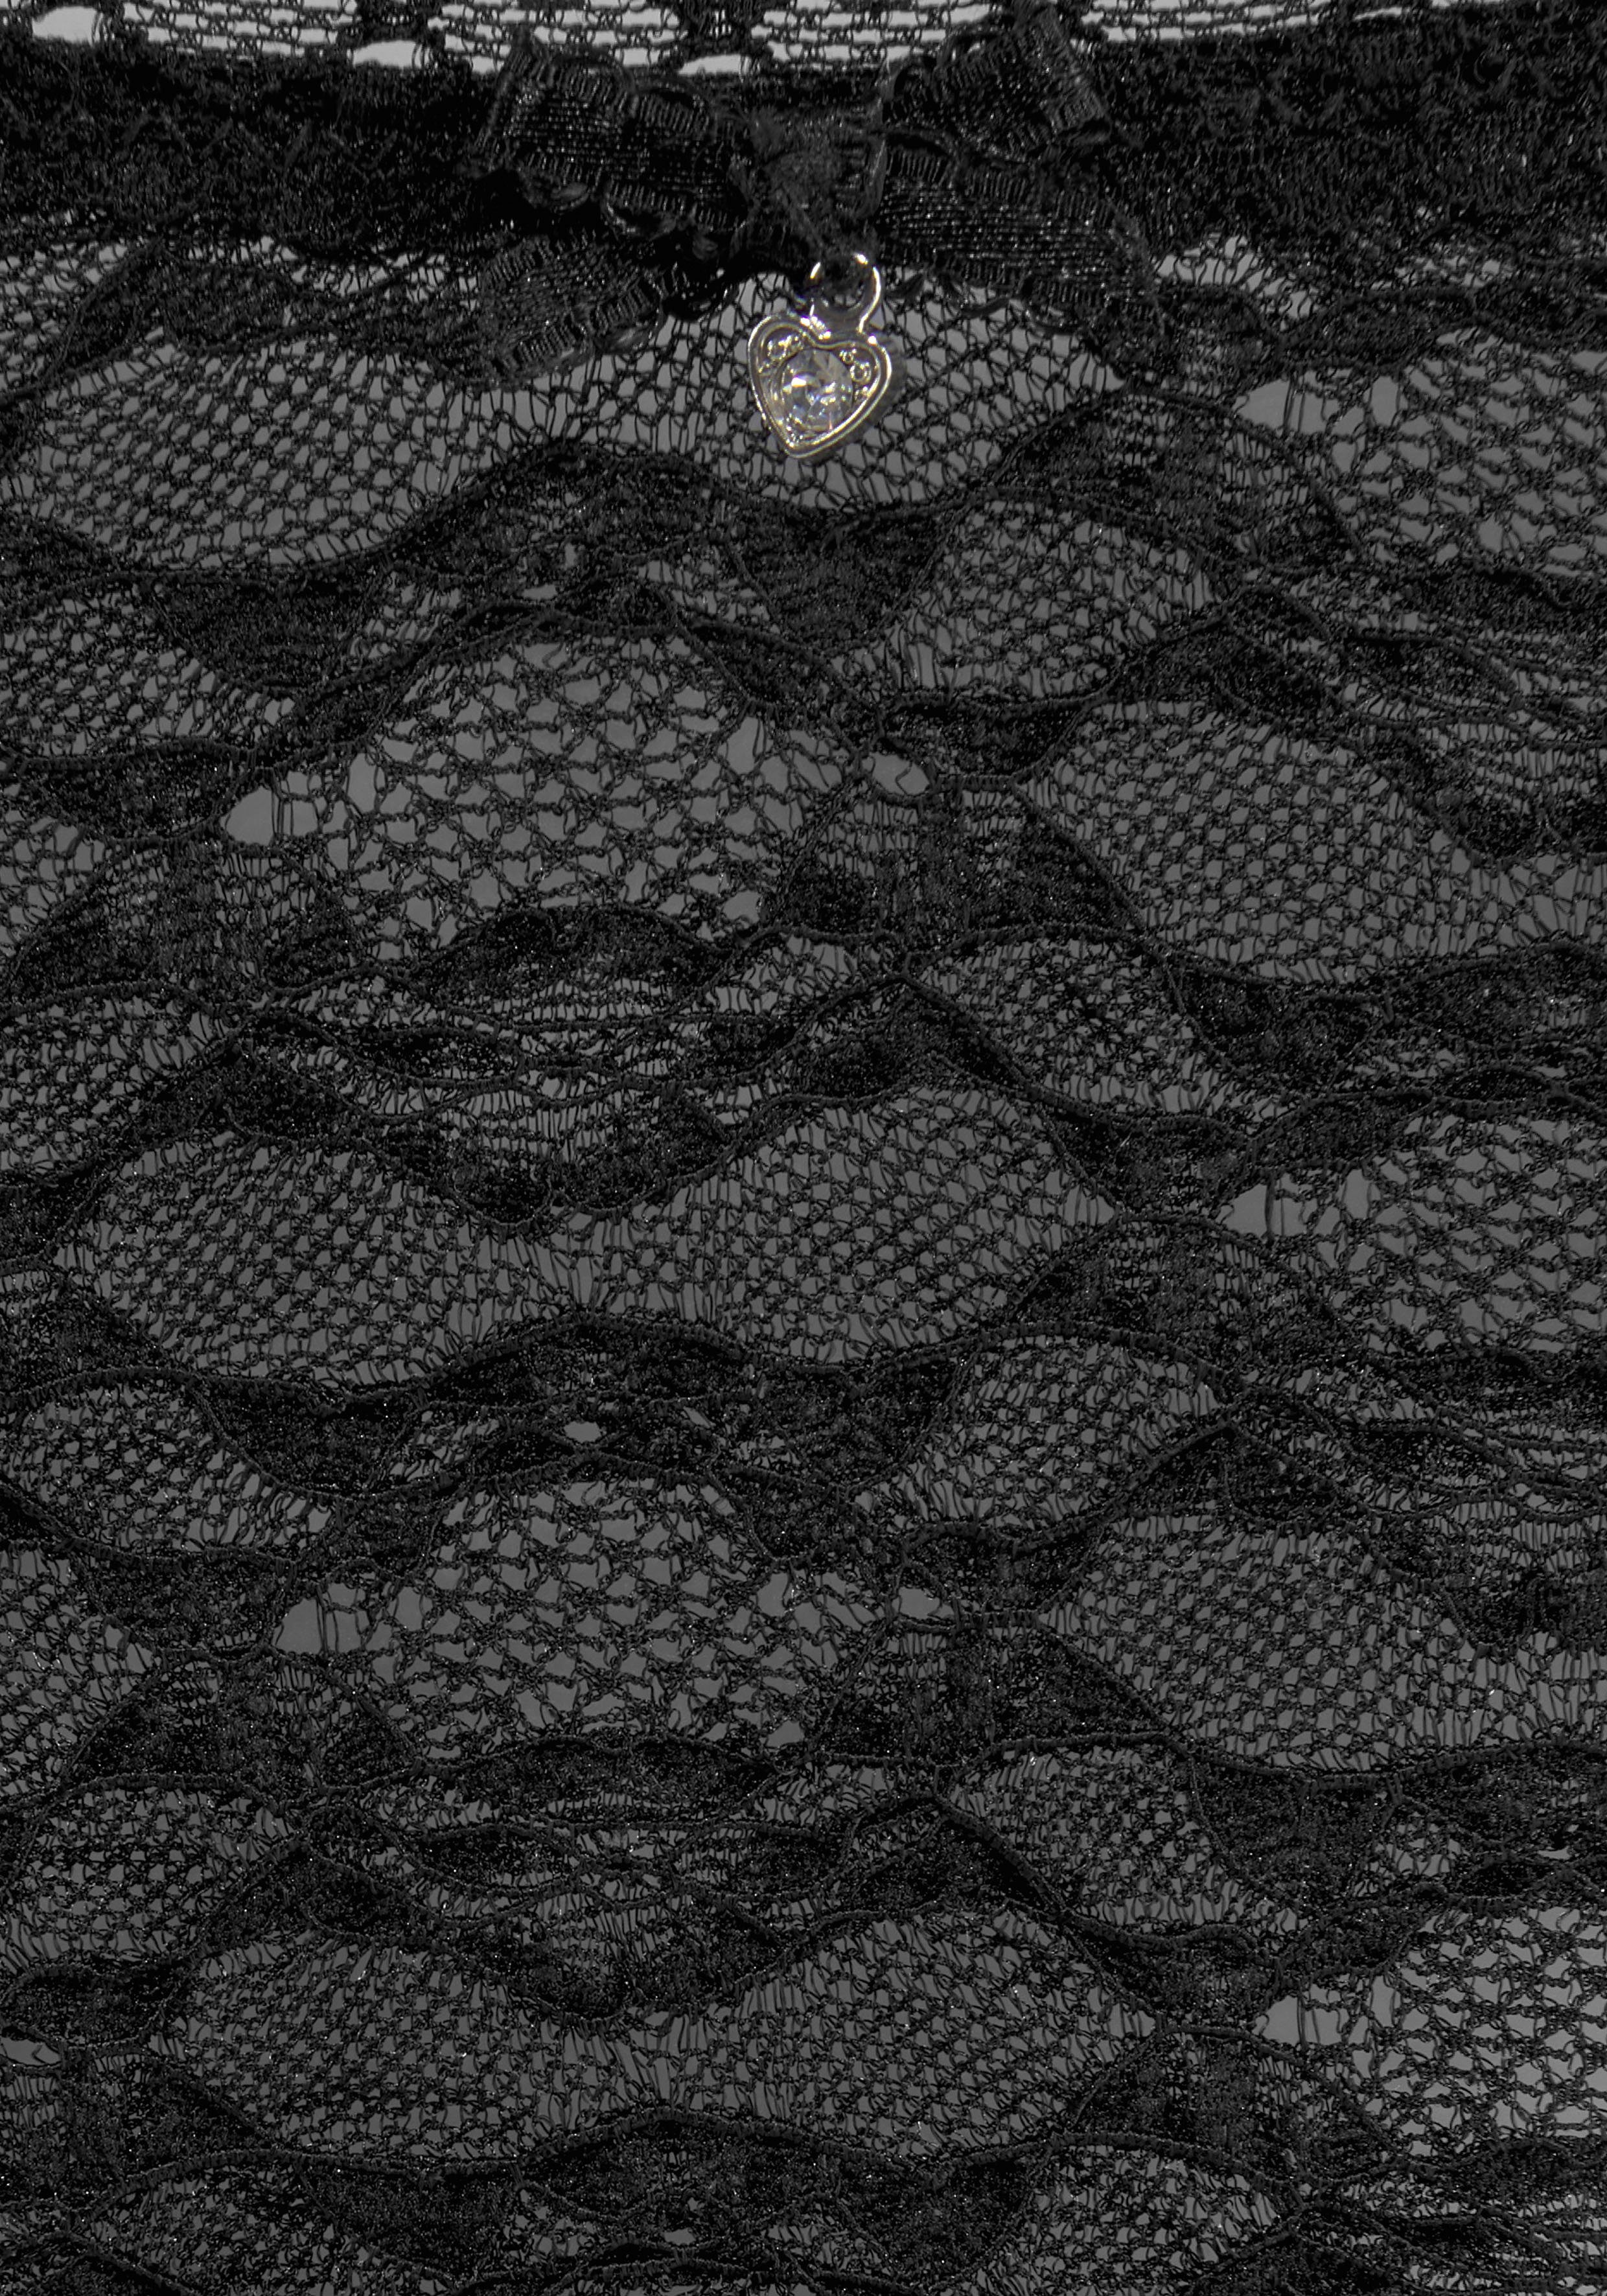 Optik aus in schwarz floraler Spitze String dezent transparenter Clarissse feiner, s.Oliver